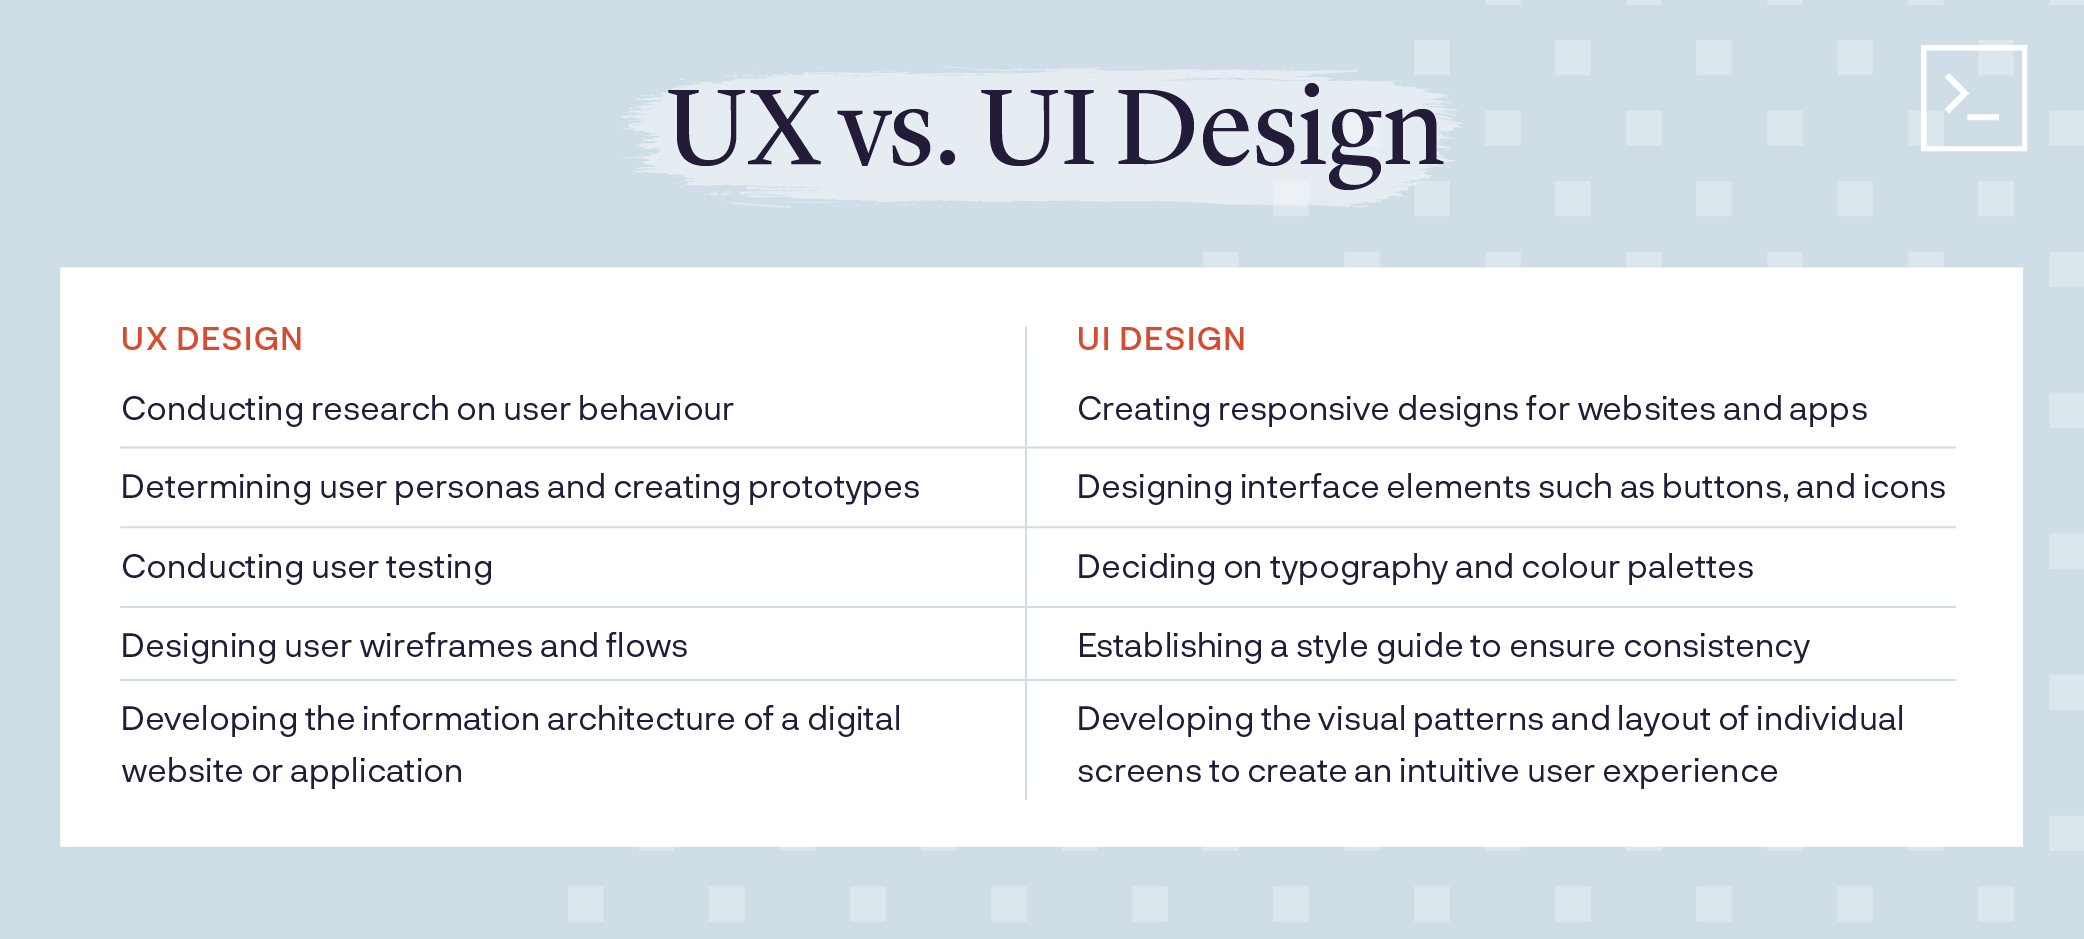 UX vs. UI Design